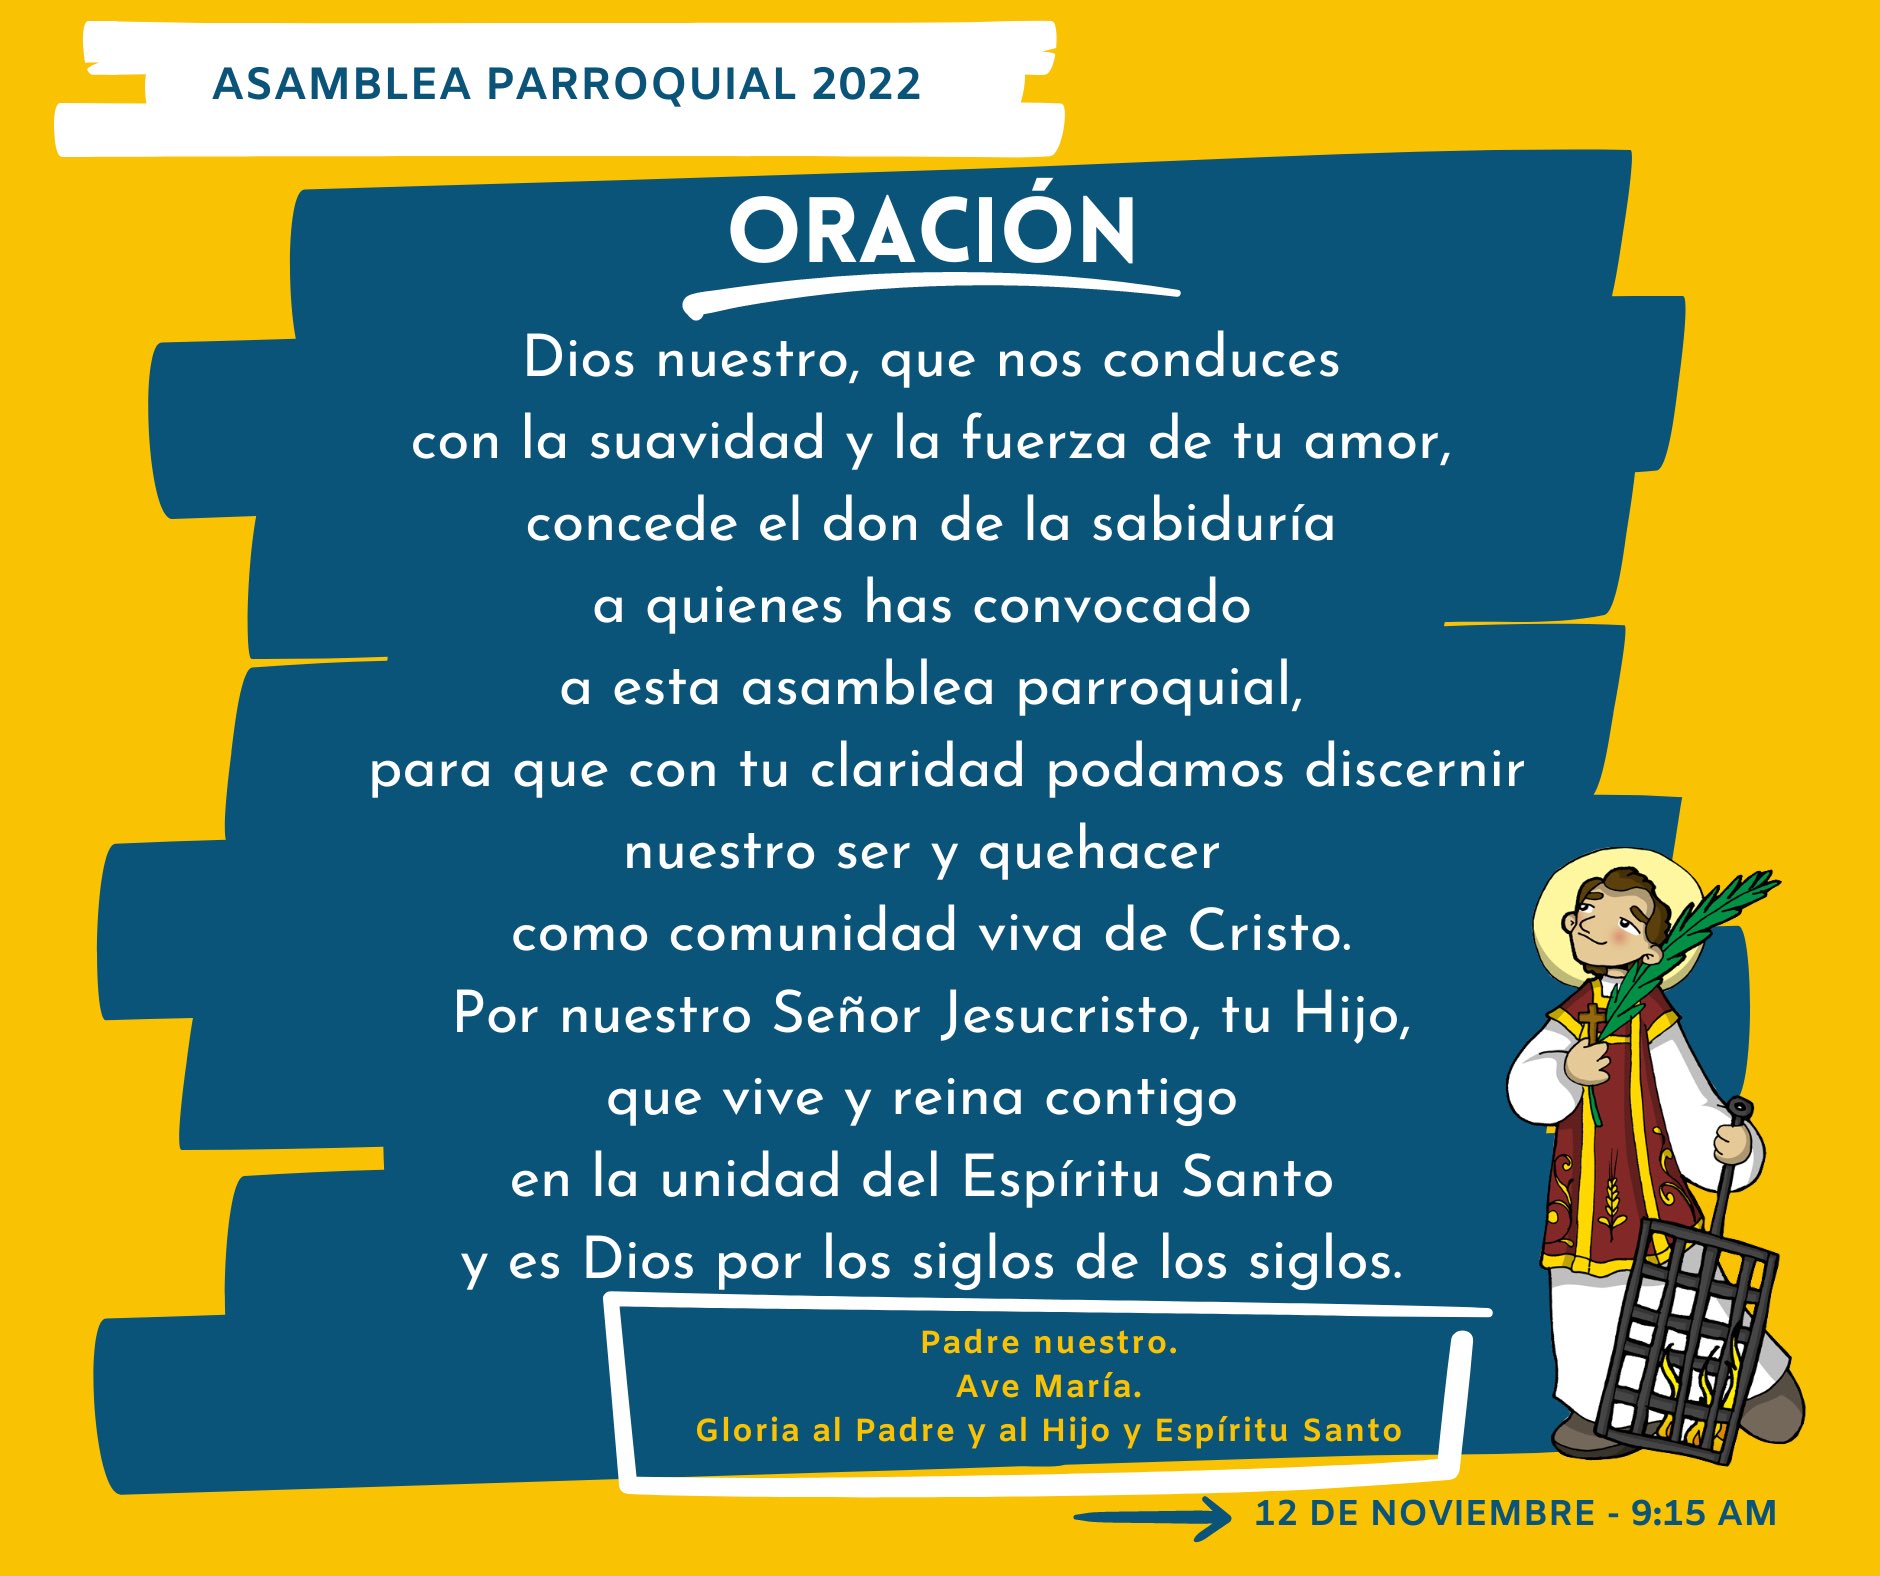 Parroquia de San Lorenzo Huipulco (@IglesiaHuipulco) / Twitter